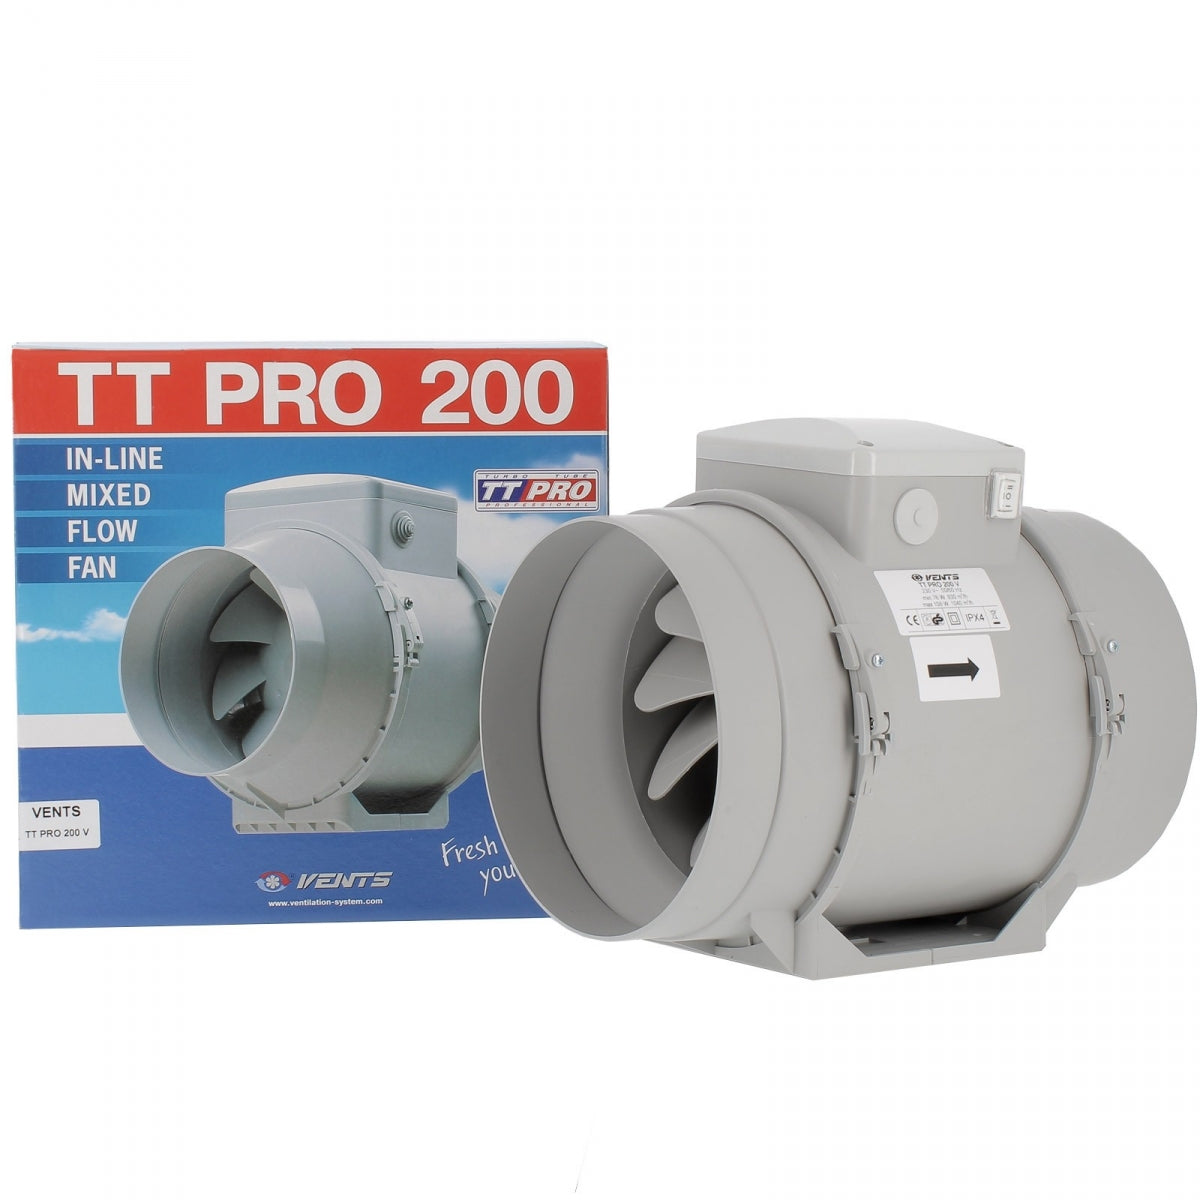 Absaugung TT Pro 200 – 2 Geschwindigkeiten 830 und 1040 m3/h – ENTLÜFTUNG